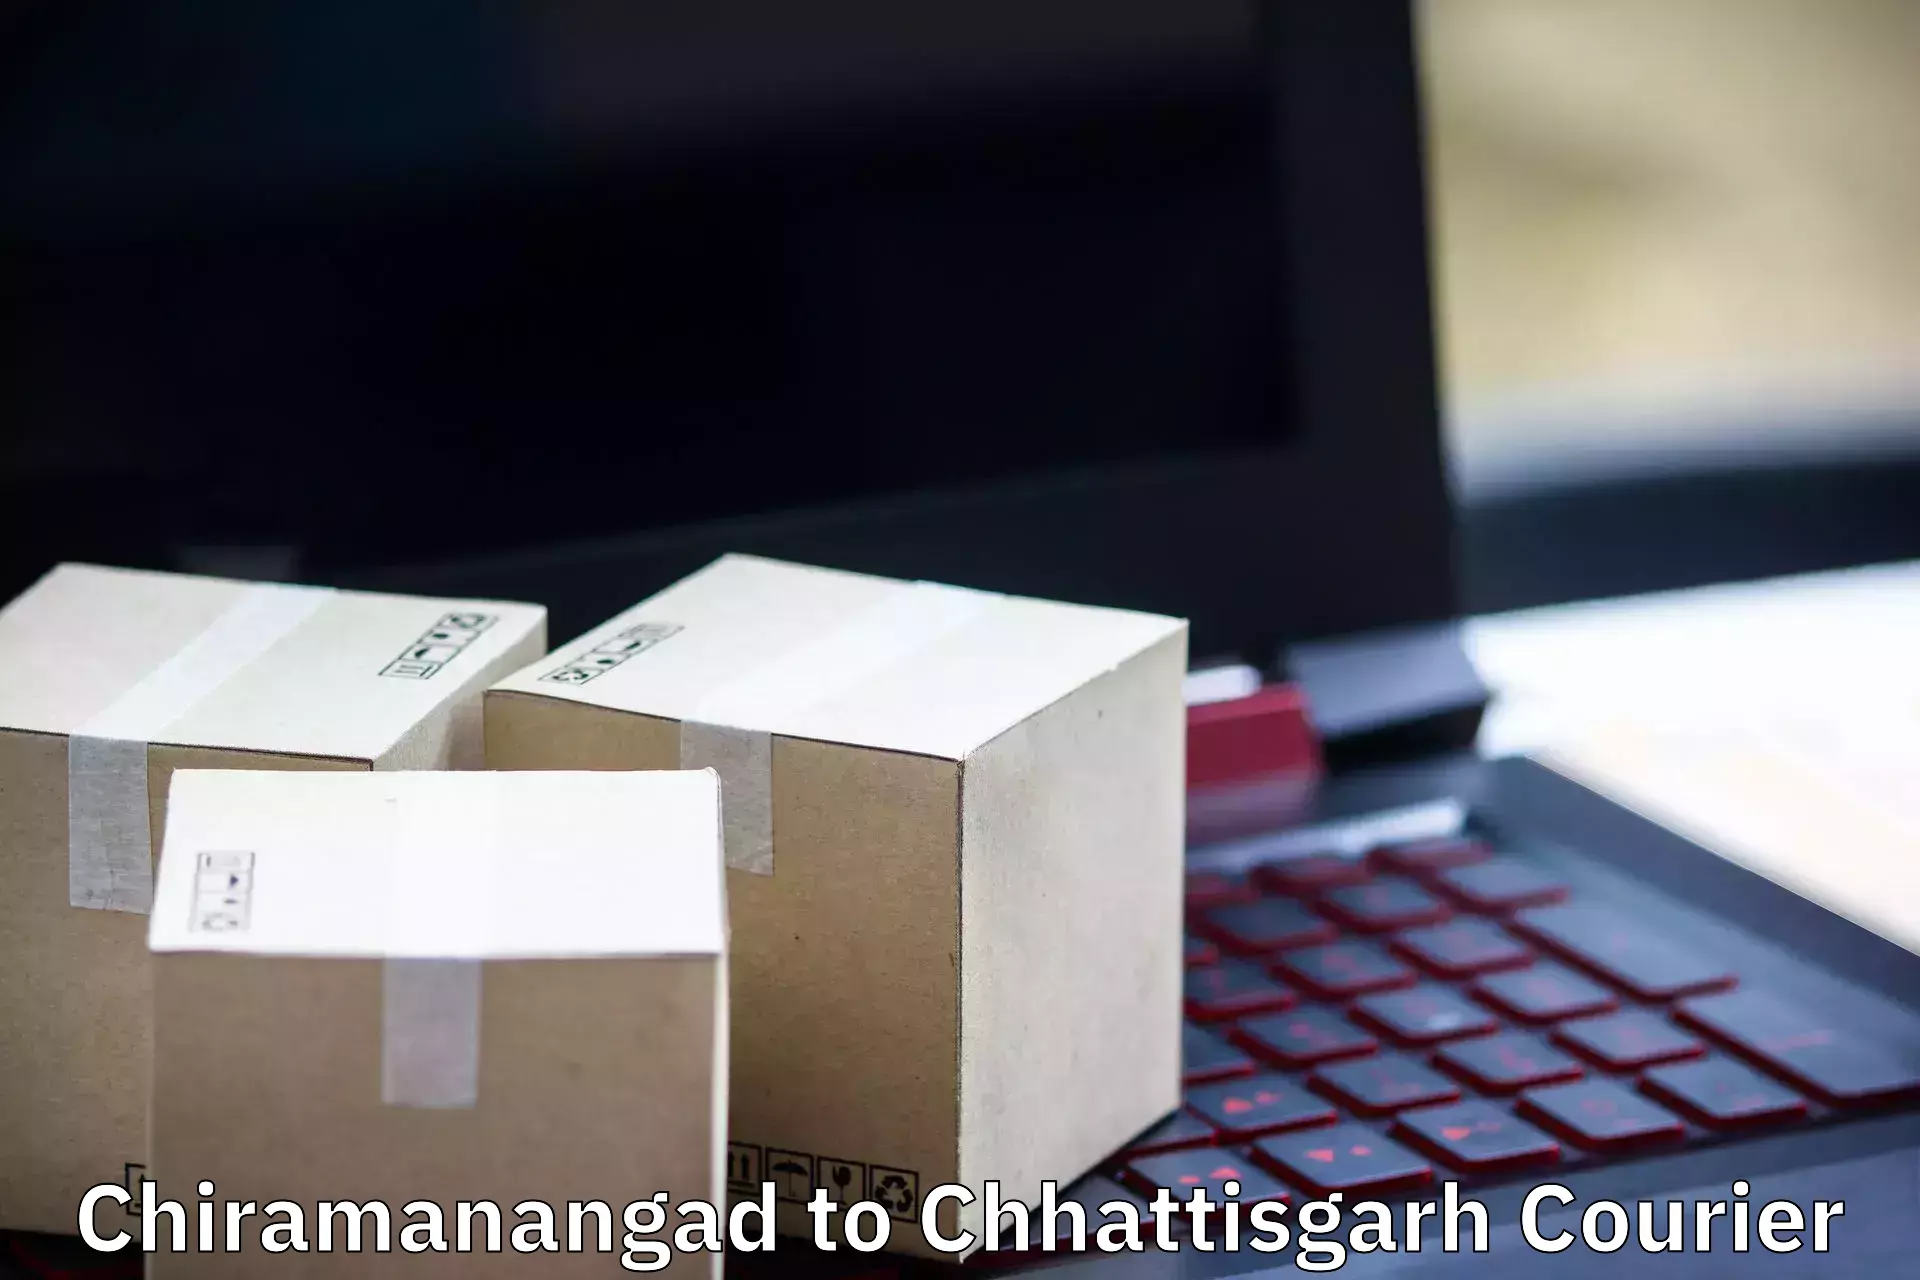 Furniture transport experts Chiramanangad to Dharamjaigarh